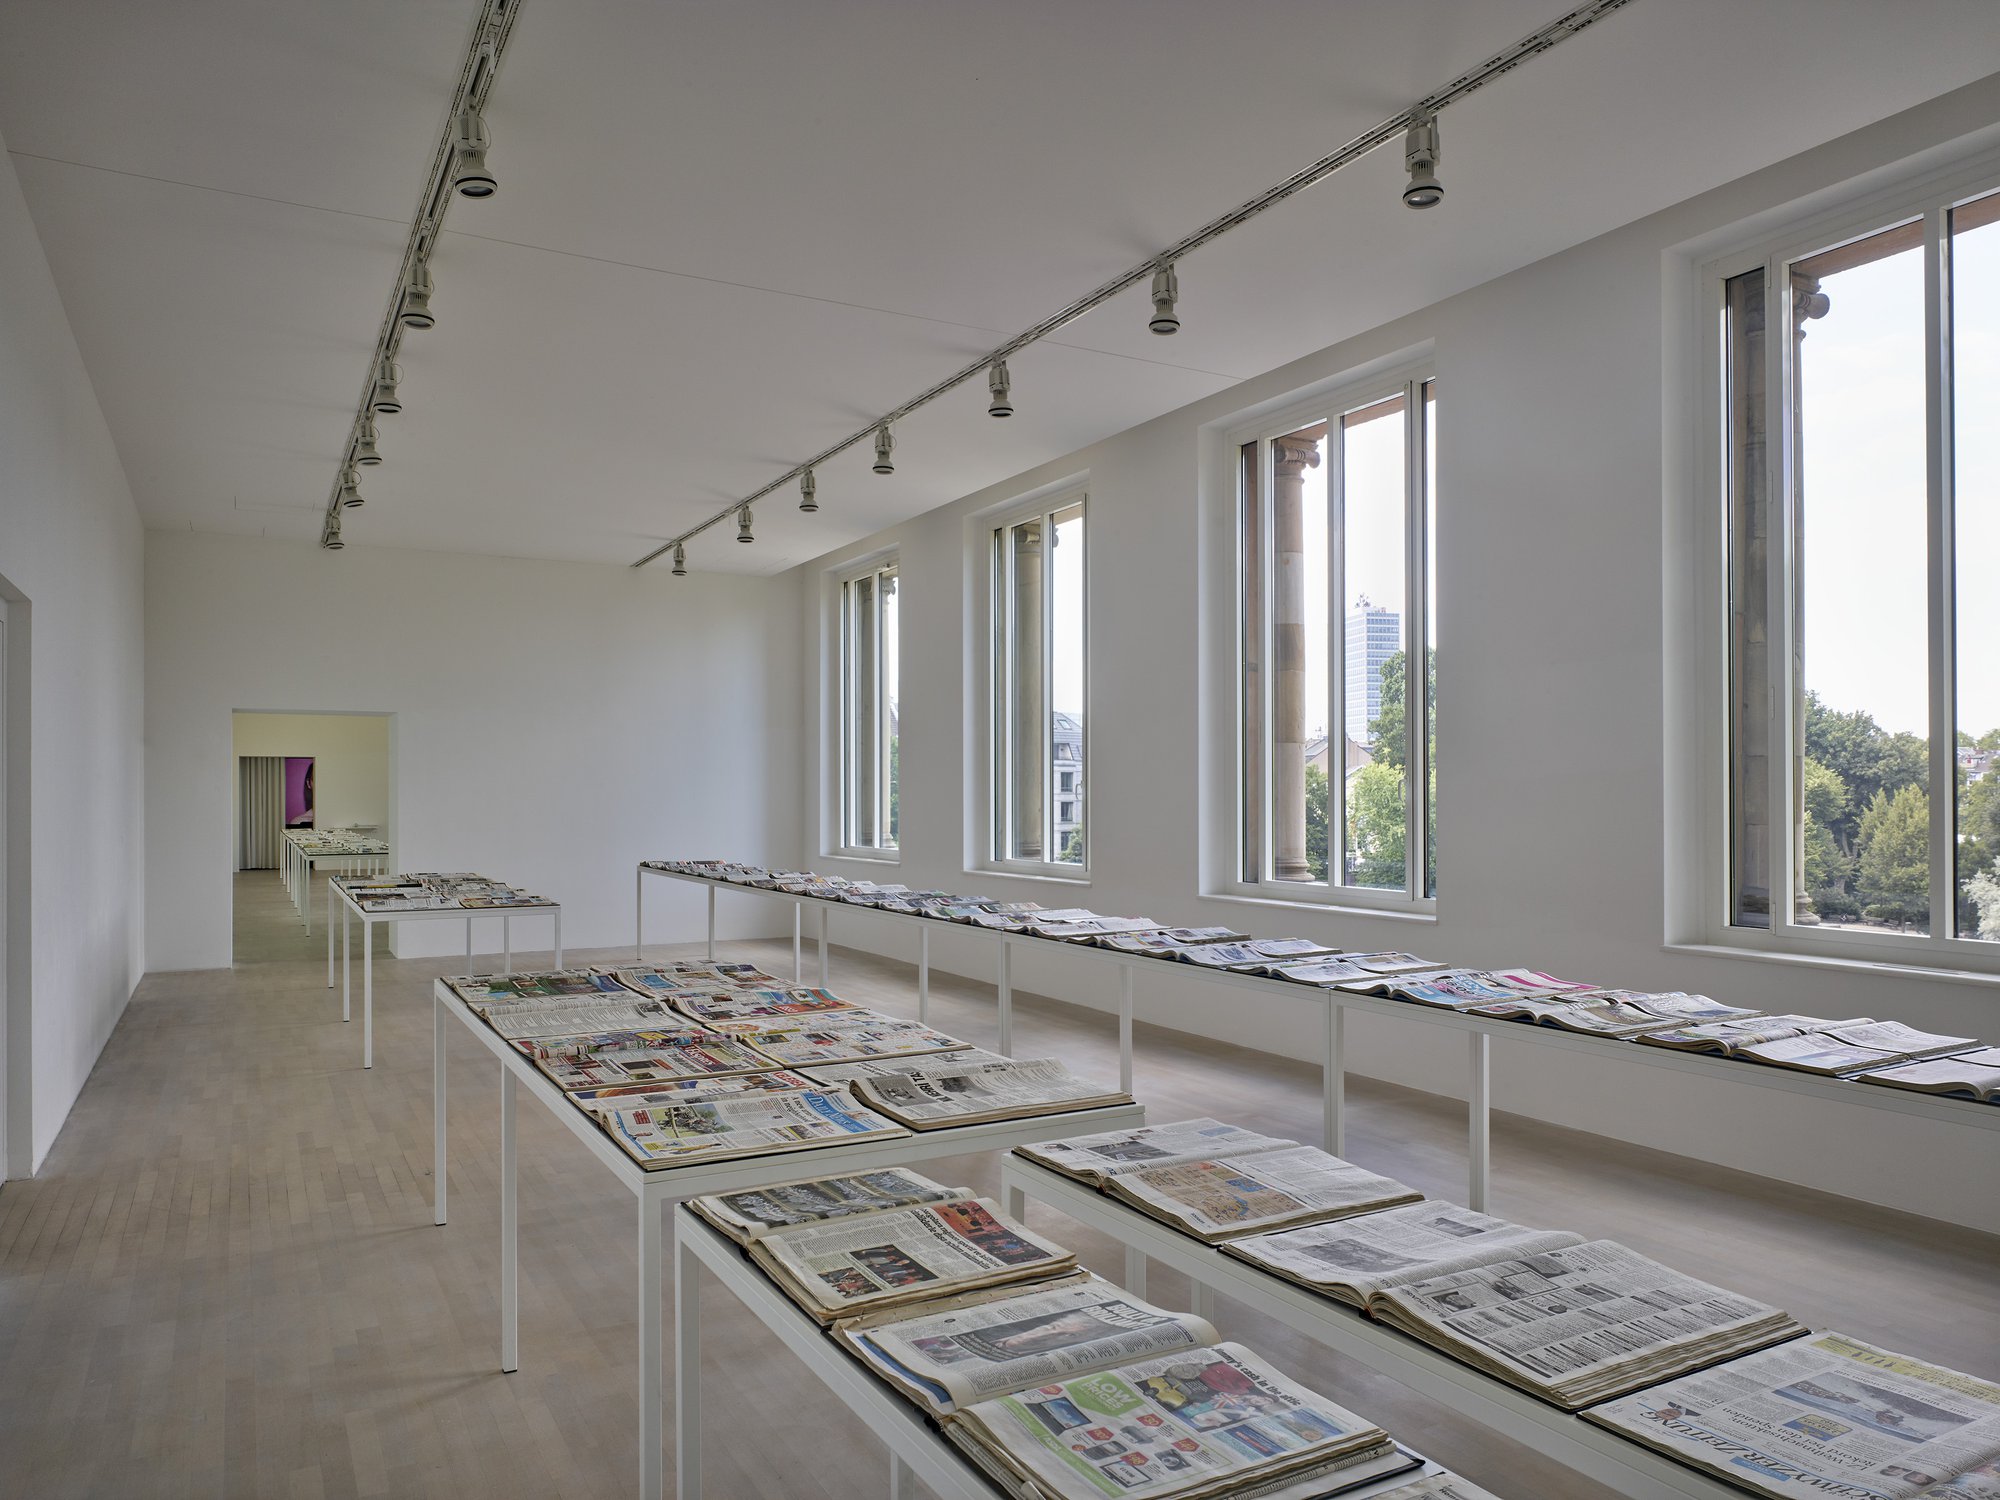 Installation view, Banu Cennetoğlu, Banu Cennetoğlu, K21 Ständehaus, Kunstsammlung Nordrhein-Westfalen, Düsseldorf, 2019